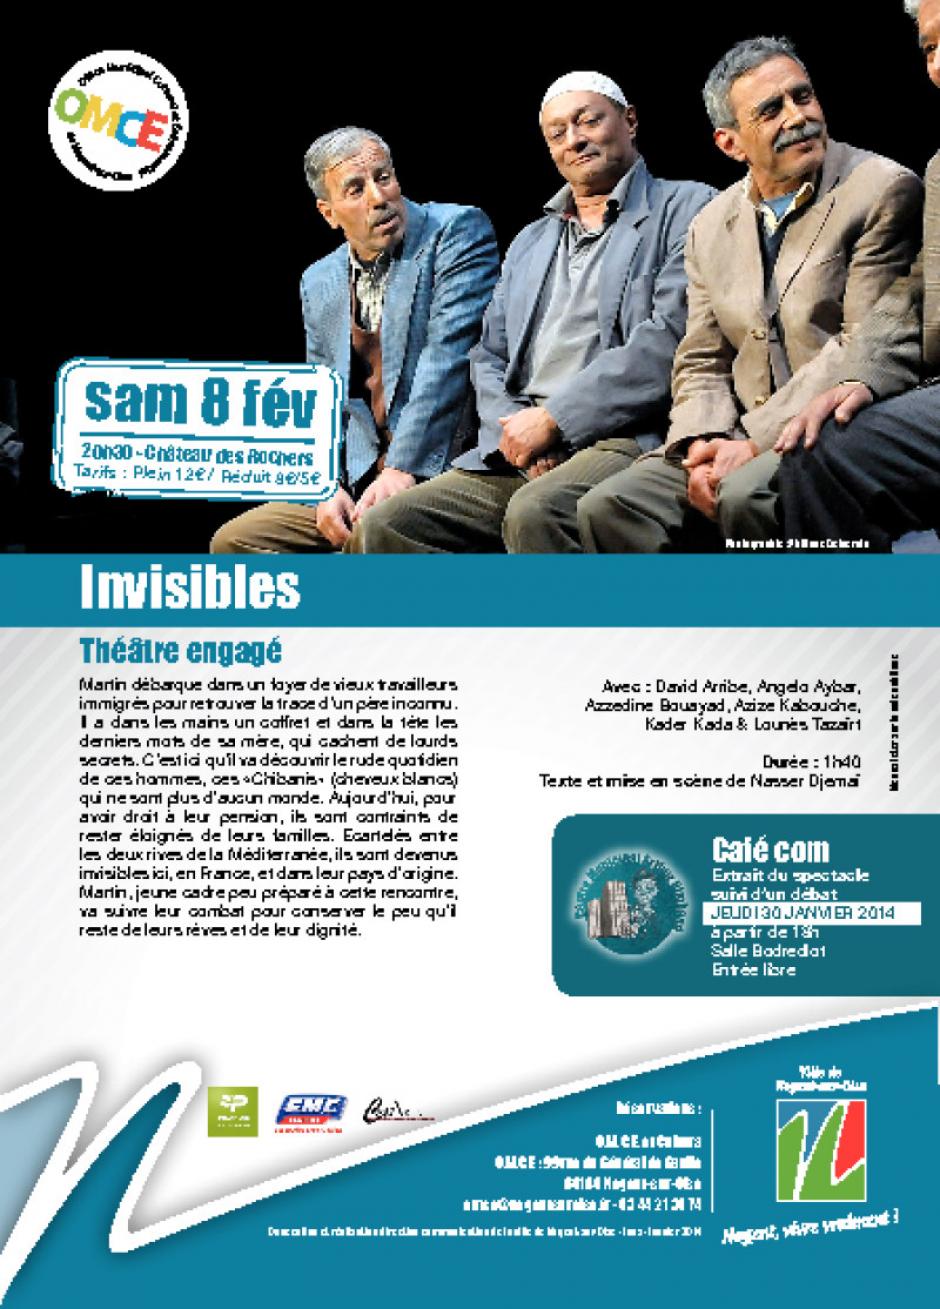 8 février, Nogent-sur-Oise - Théâtre engagé « Invisibles »